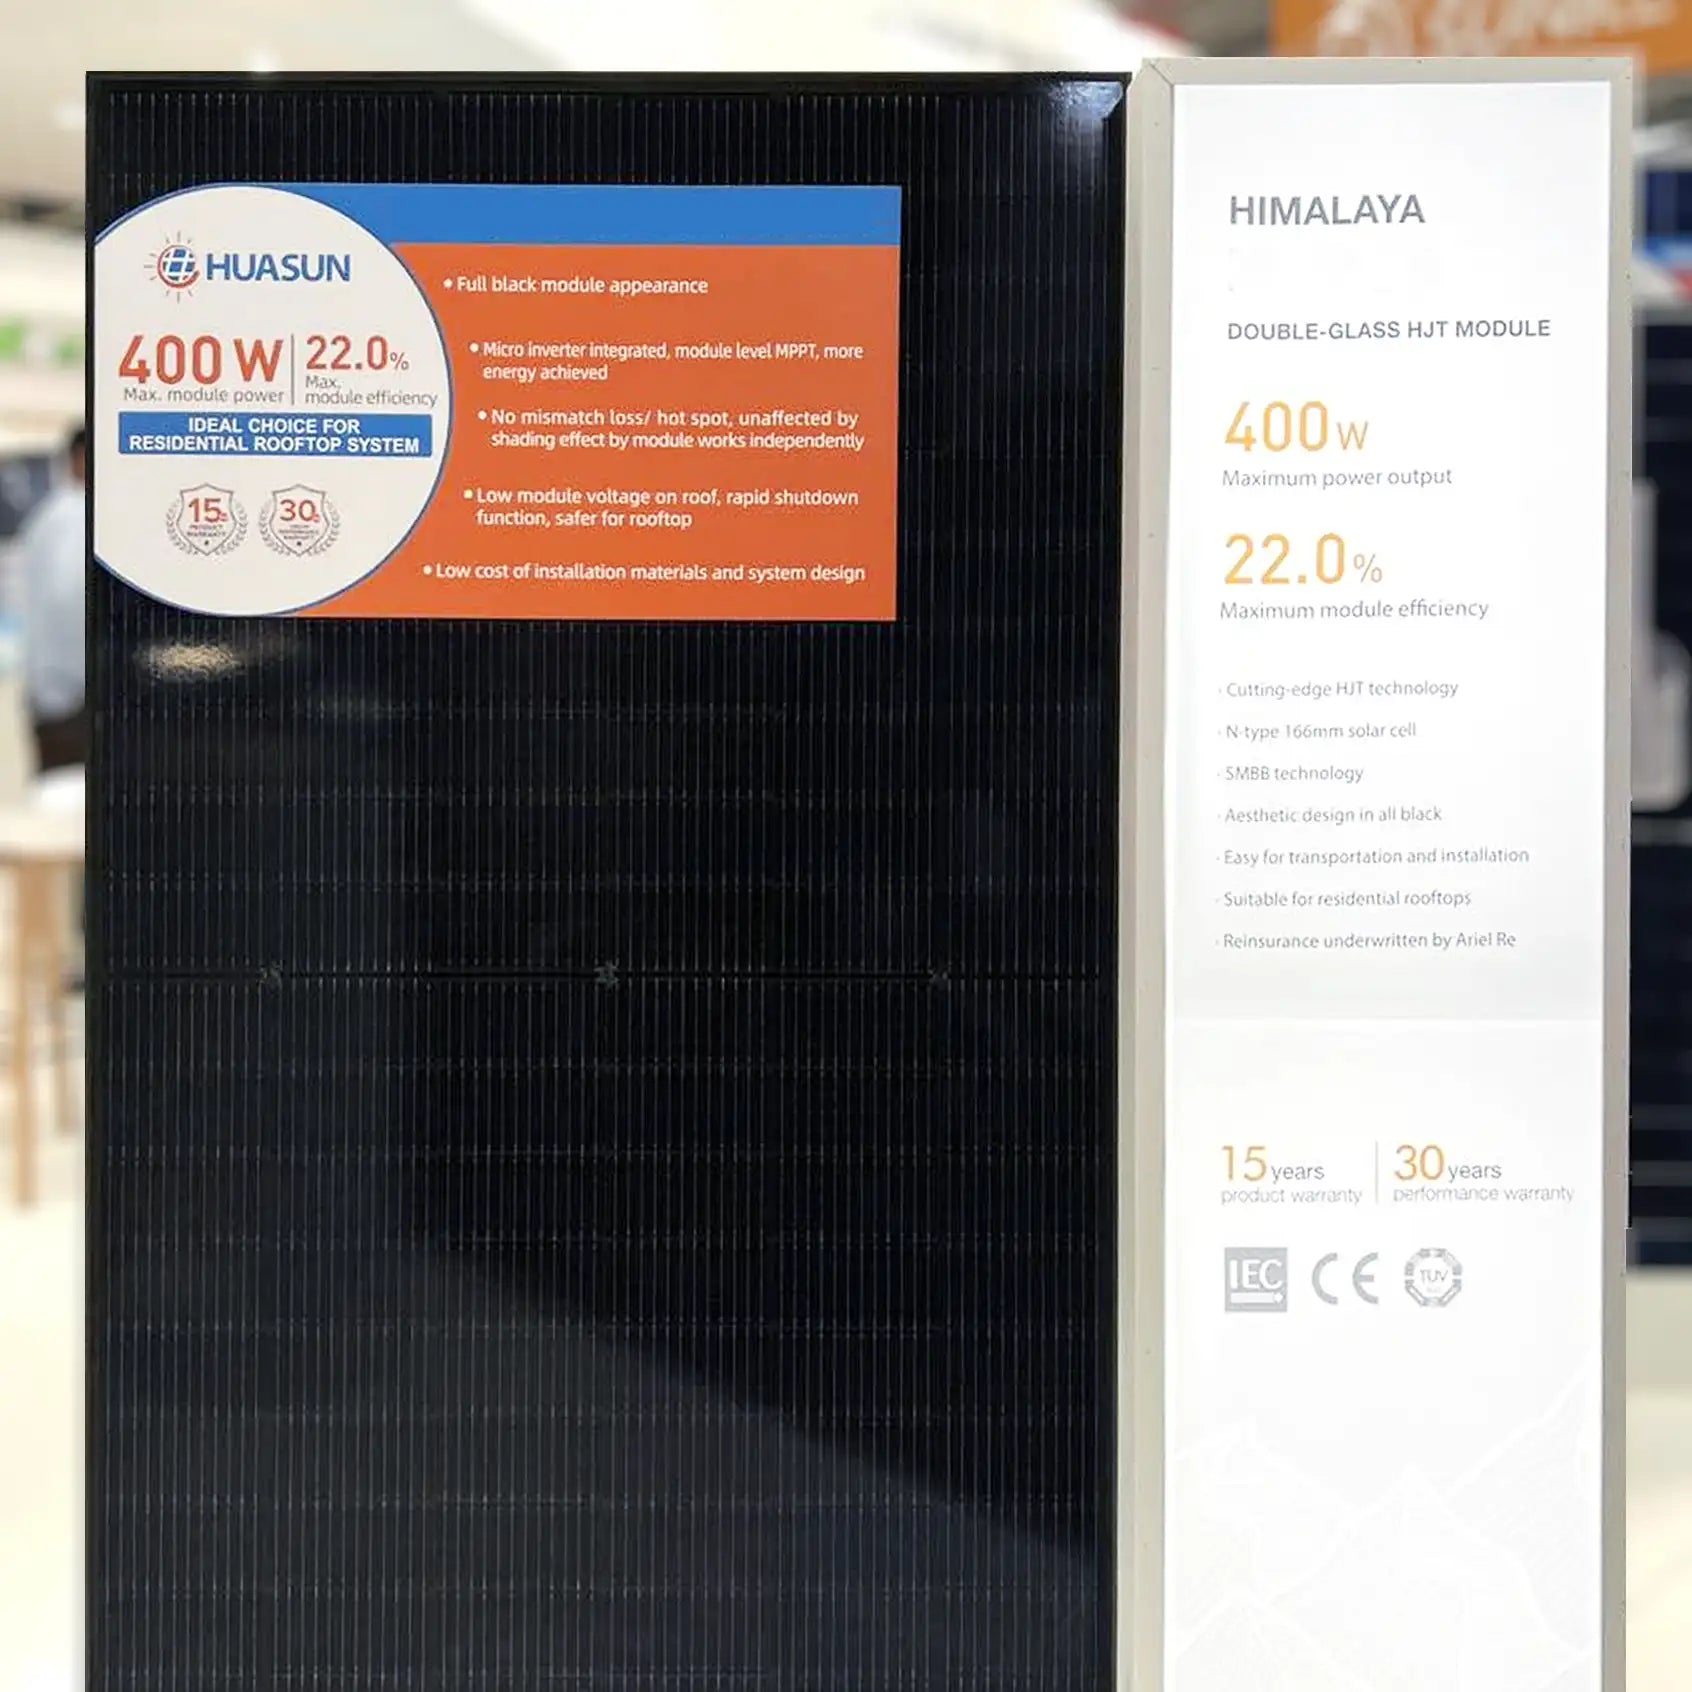 Panneau solaire bificial en verre MSMDxxxM400-HJT6DSB 120W